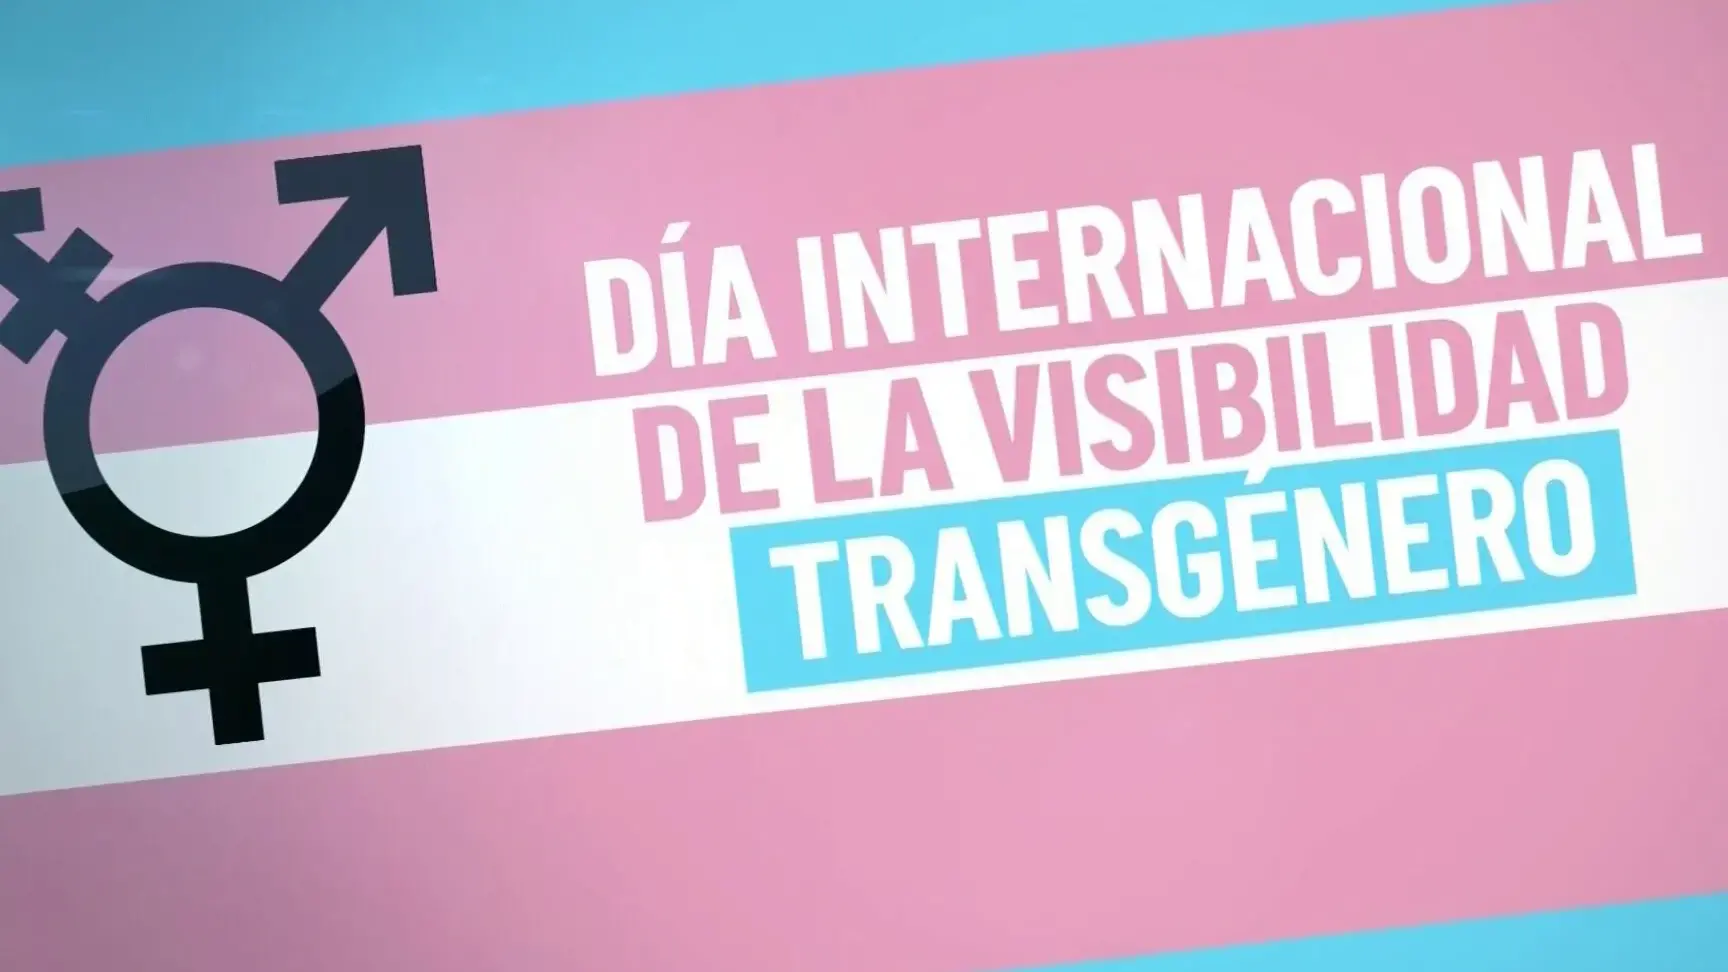 dia internacional de la visibilidad transgenero 31 de marzo